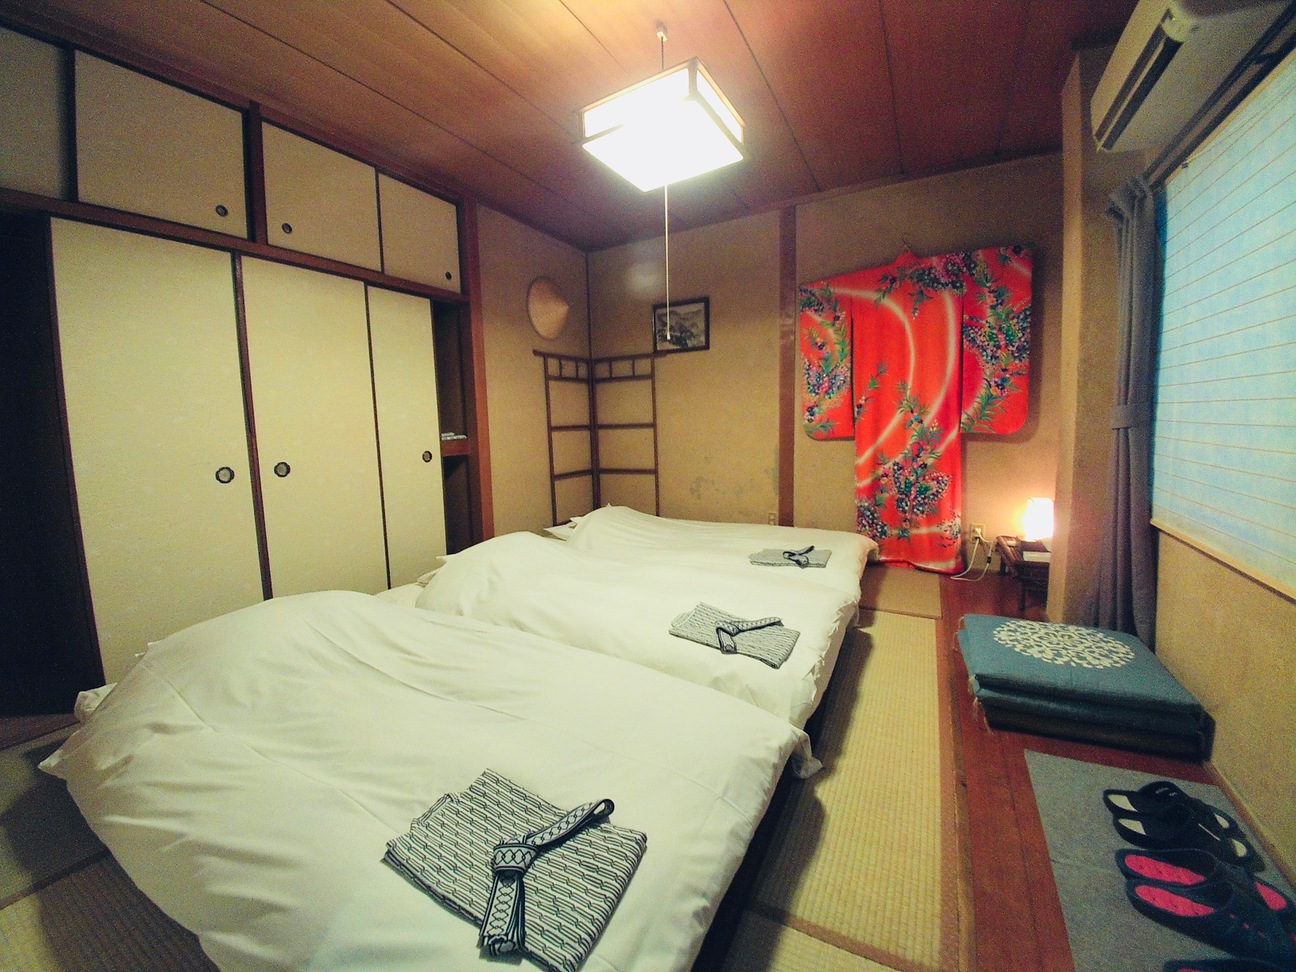 ミゾグチ部屋 Mizoguchi room